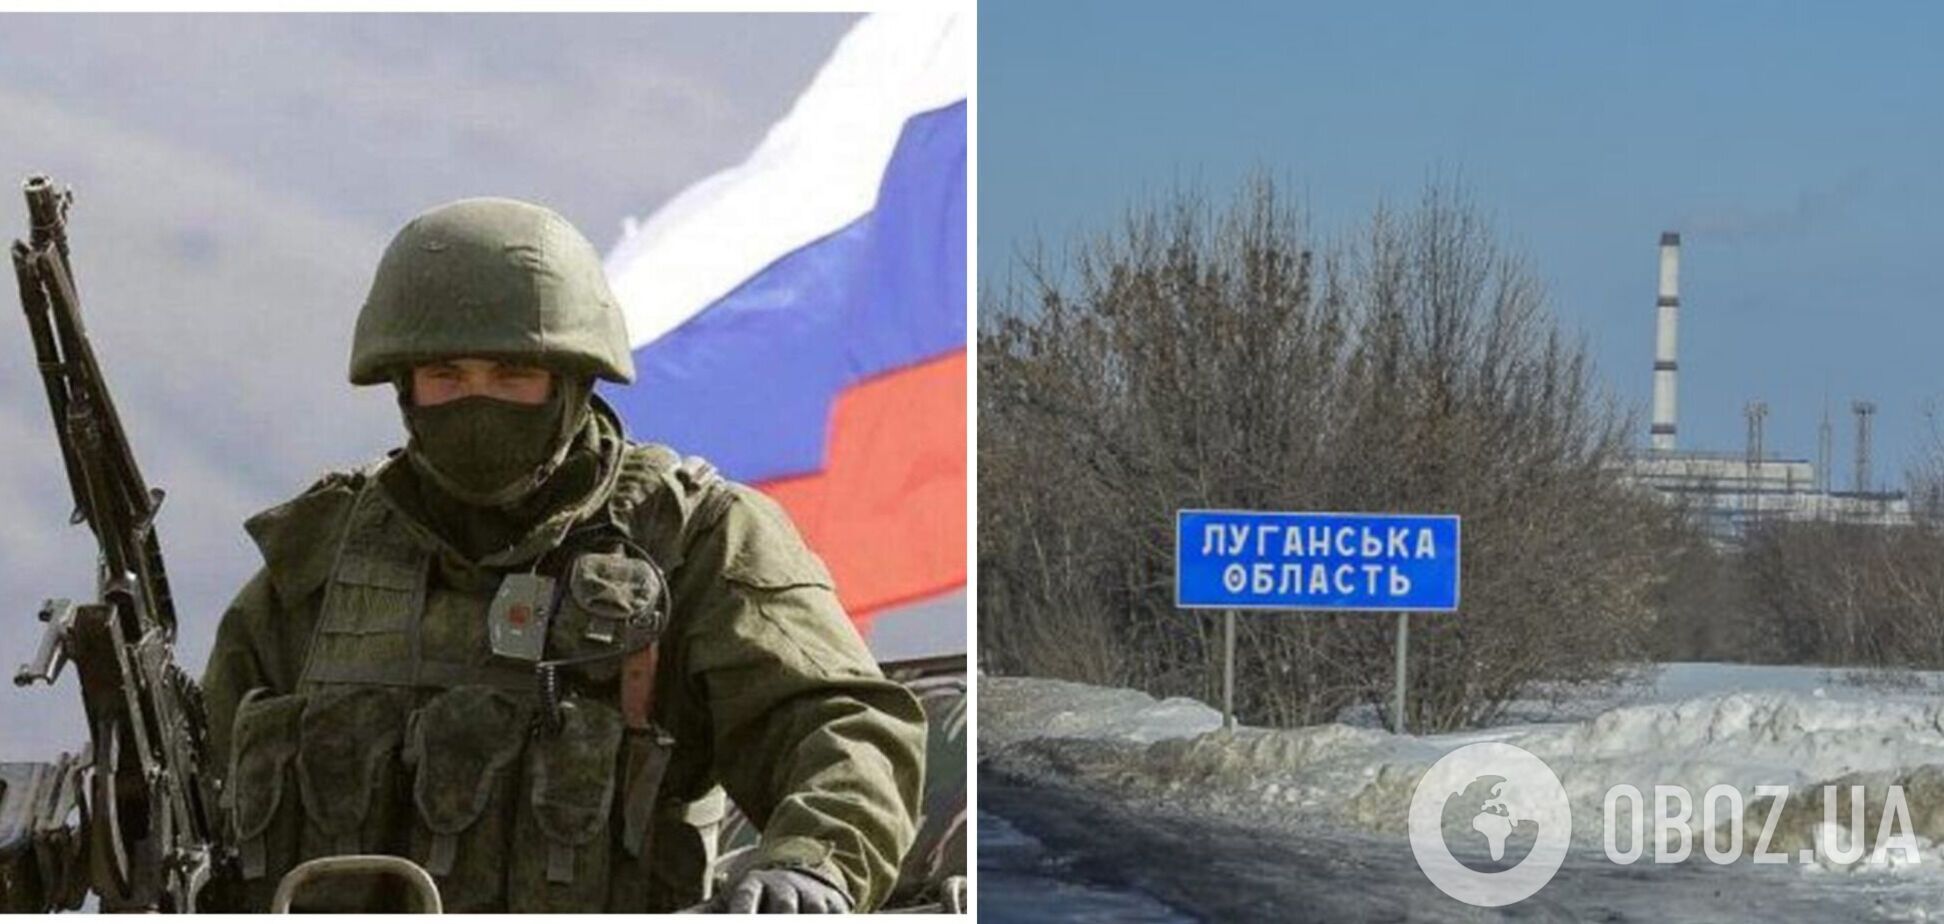 'Ситуация тяжелая, но контролируемая': Гайдай заявил, что оккупанты на Луганщине задействовали большое количество тяжелой техники